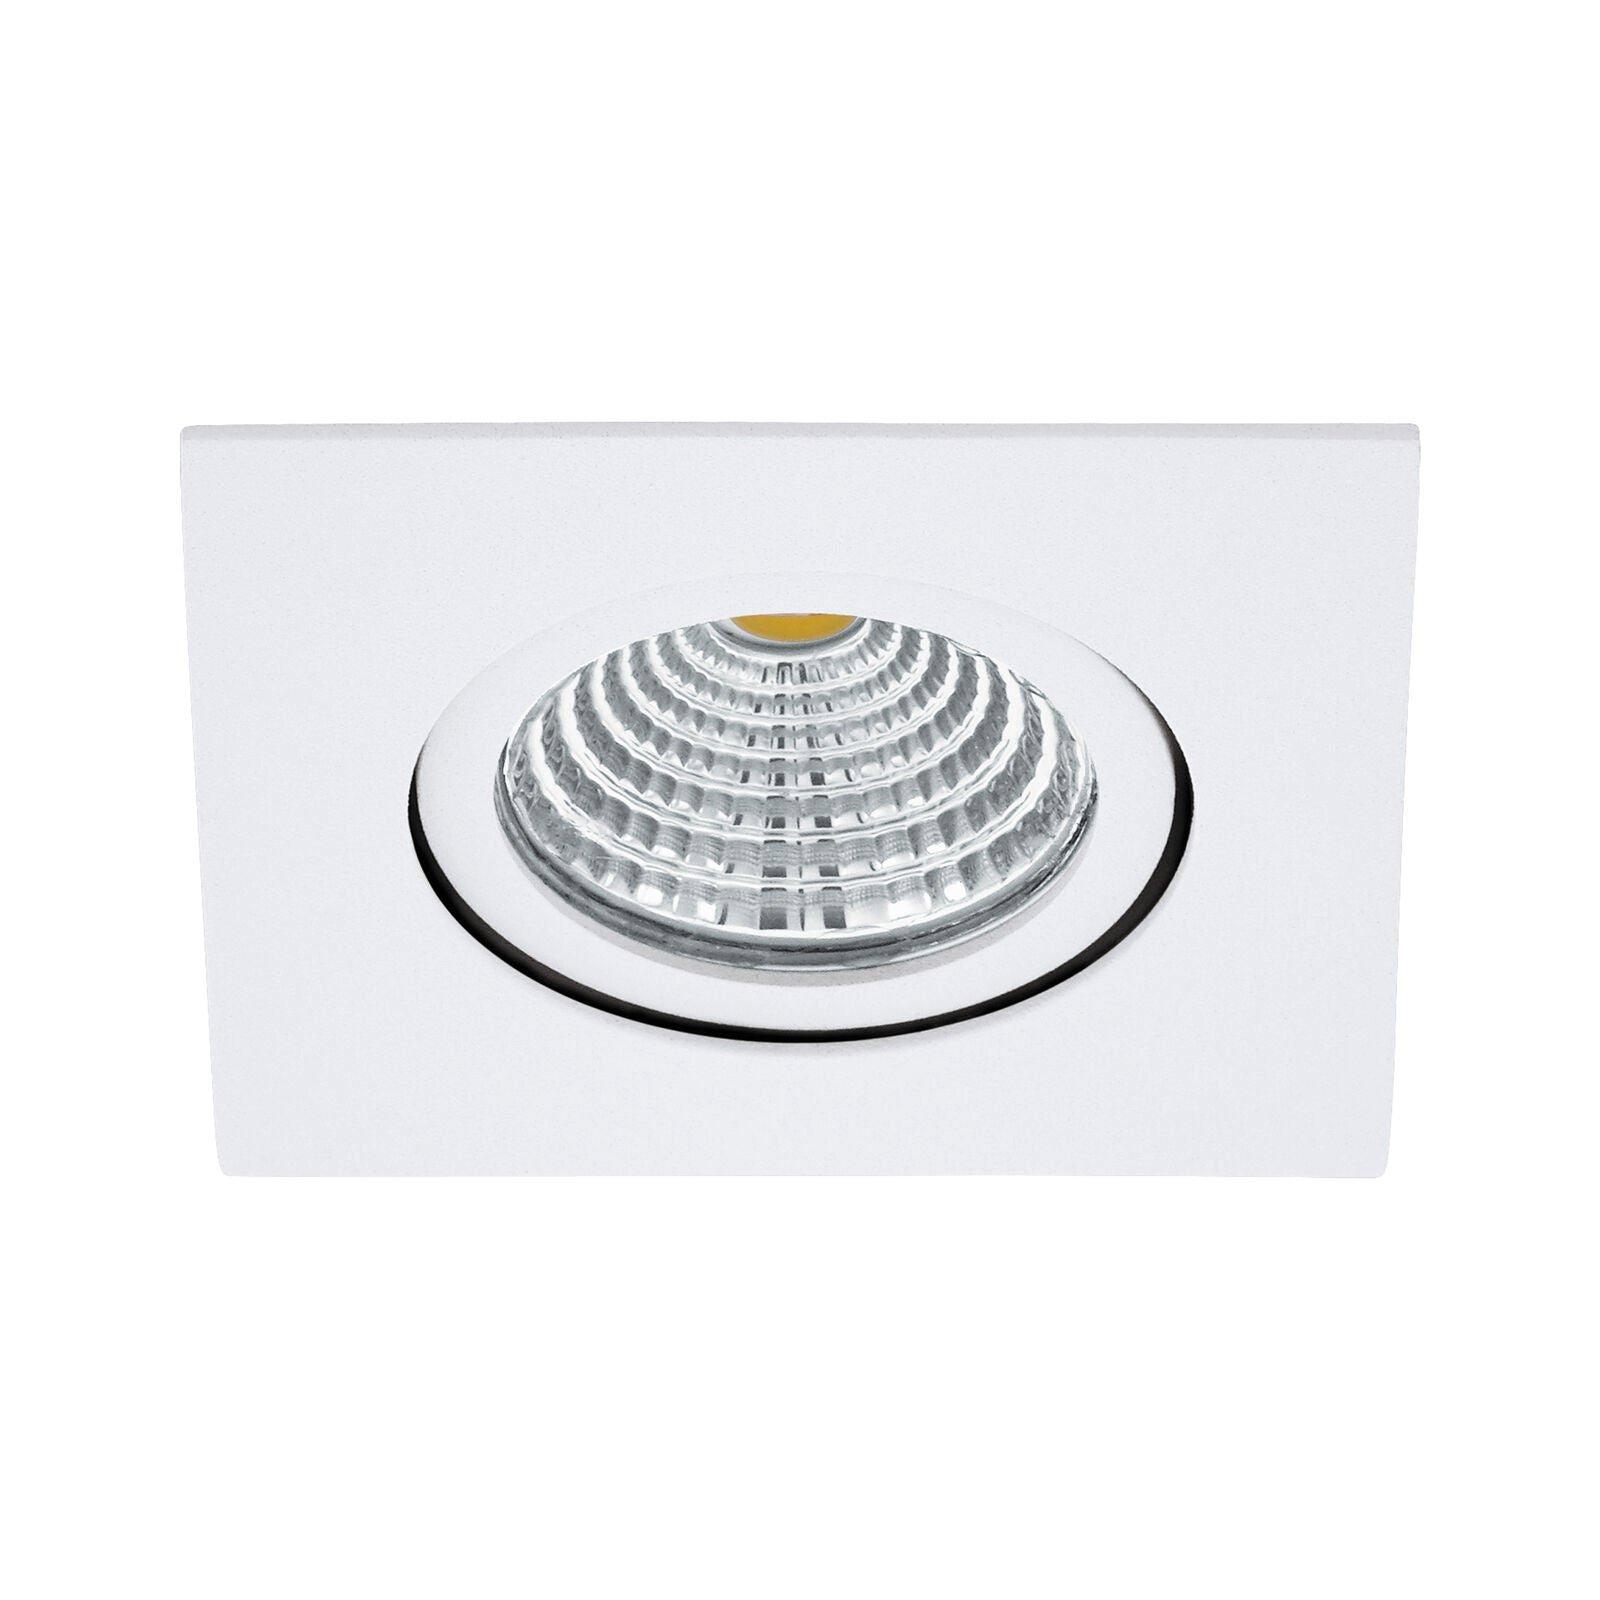 Wall & Ceiling Flush Downlight White Recess Spotlight 6W Built in LED